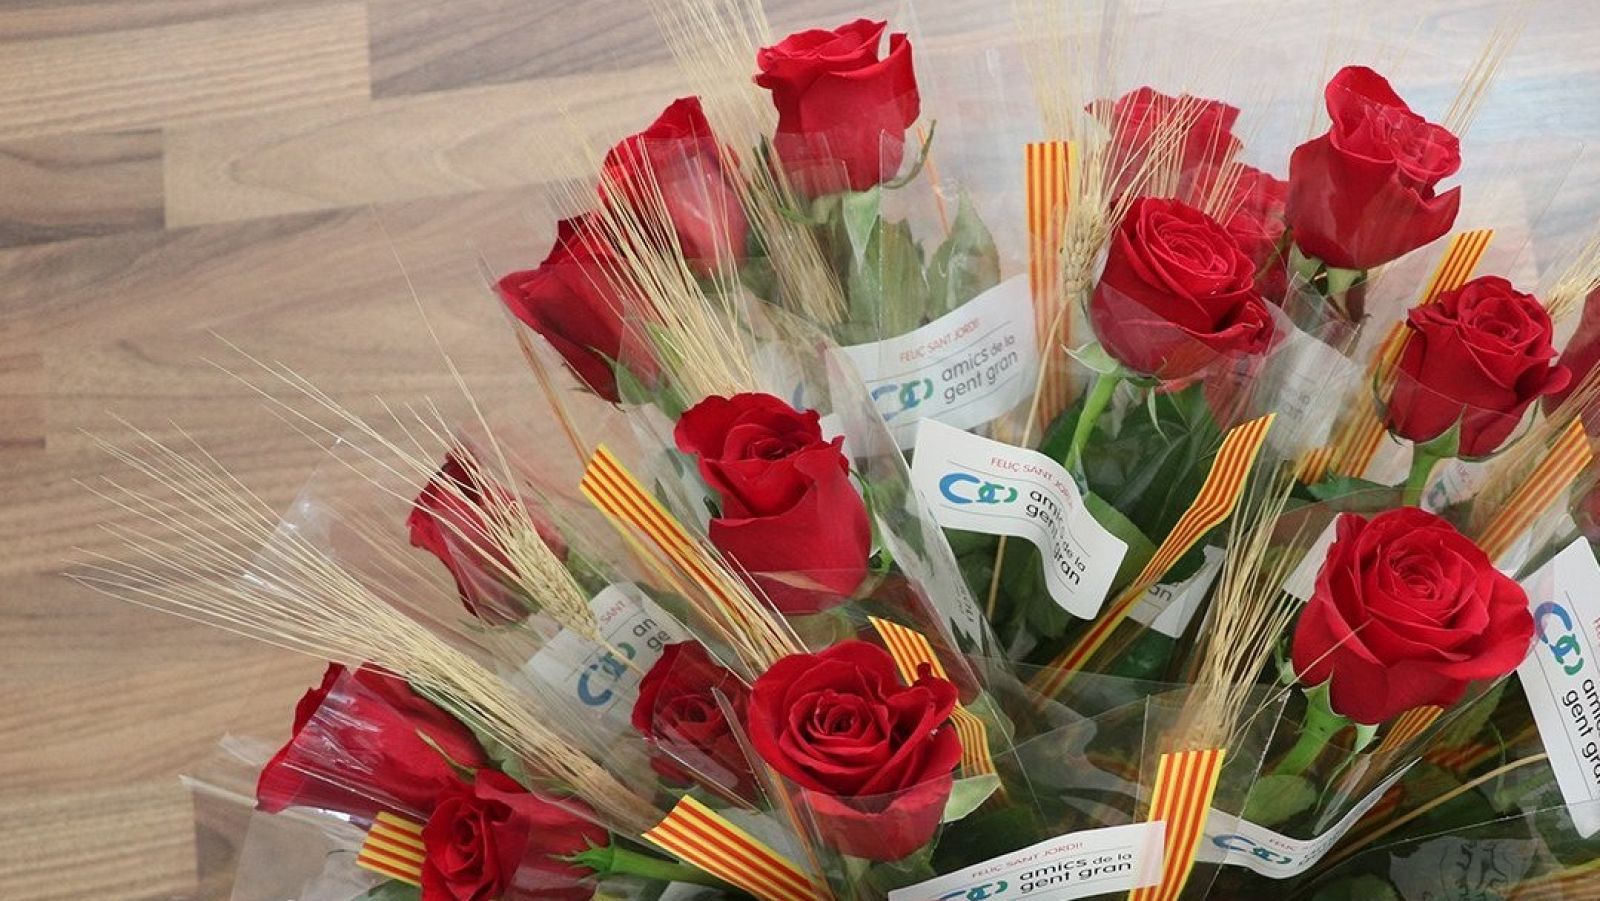 Amics de la Gent Gran torna a entregar roses a les residències